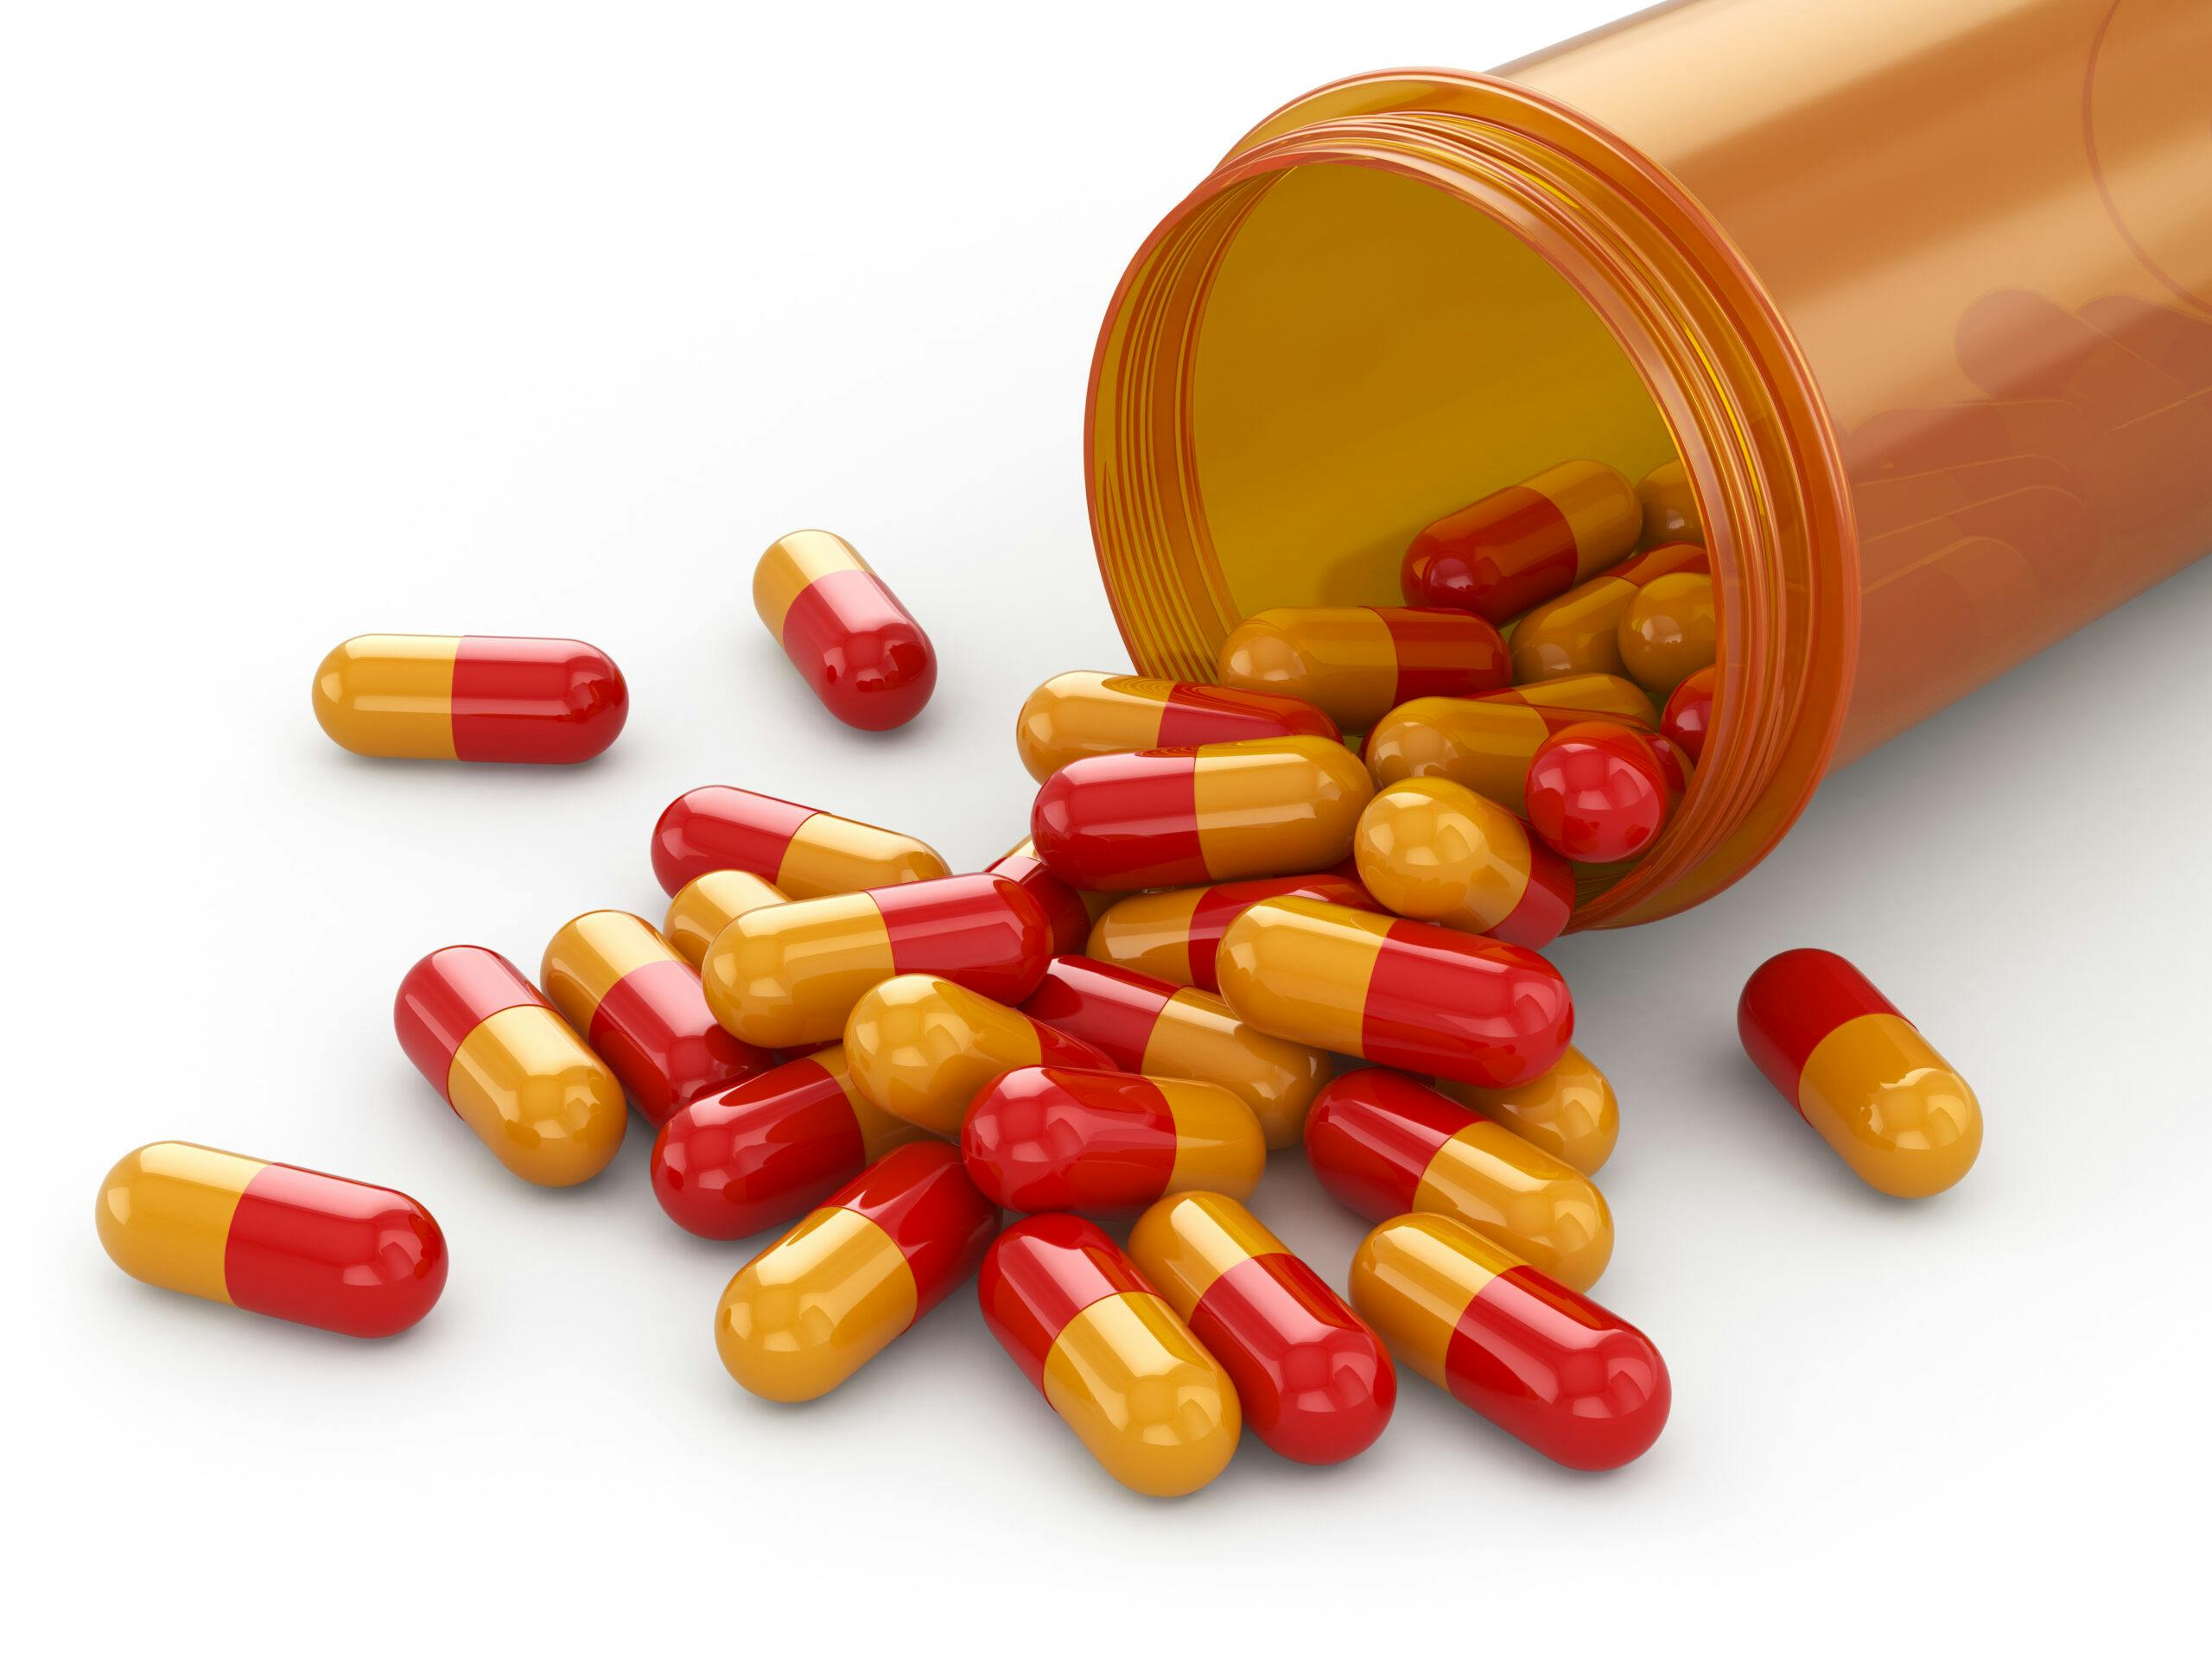 orange red capsules pills dexedrine spilling from rx bottle